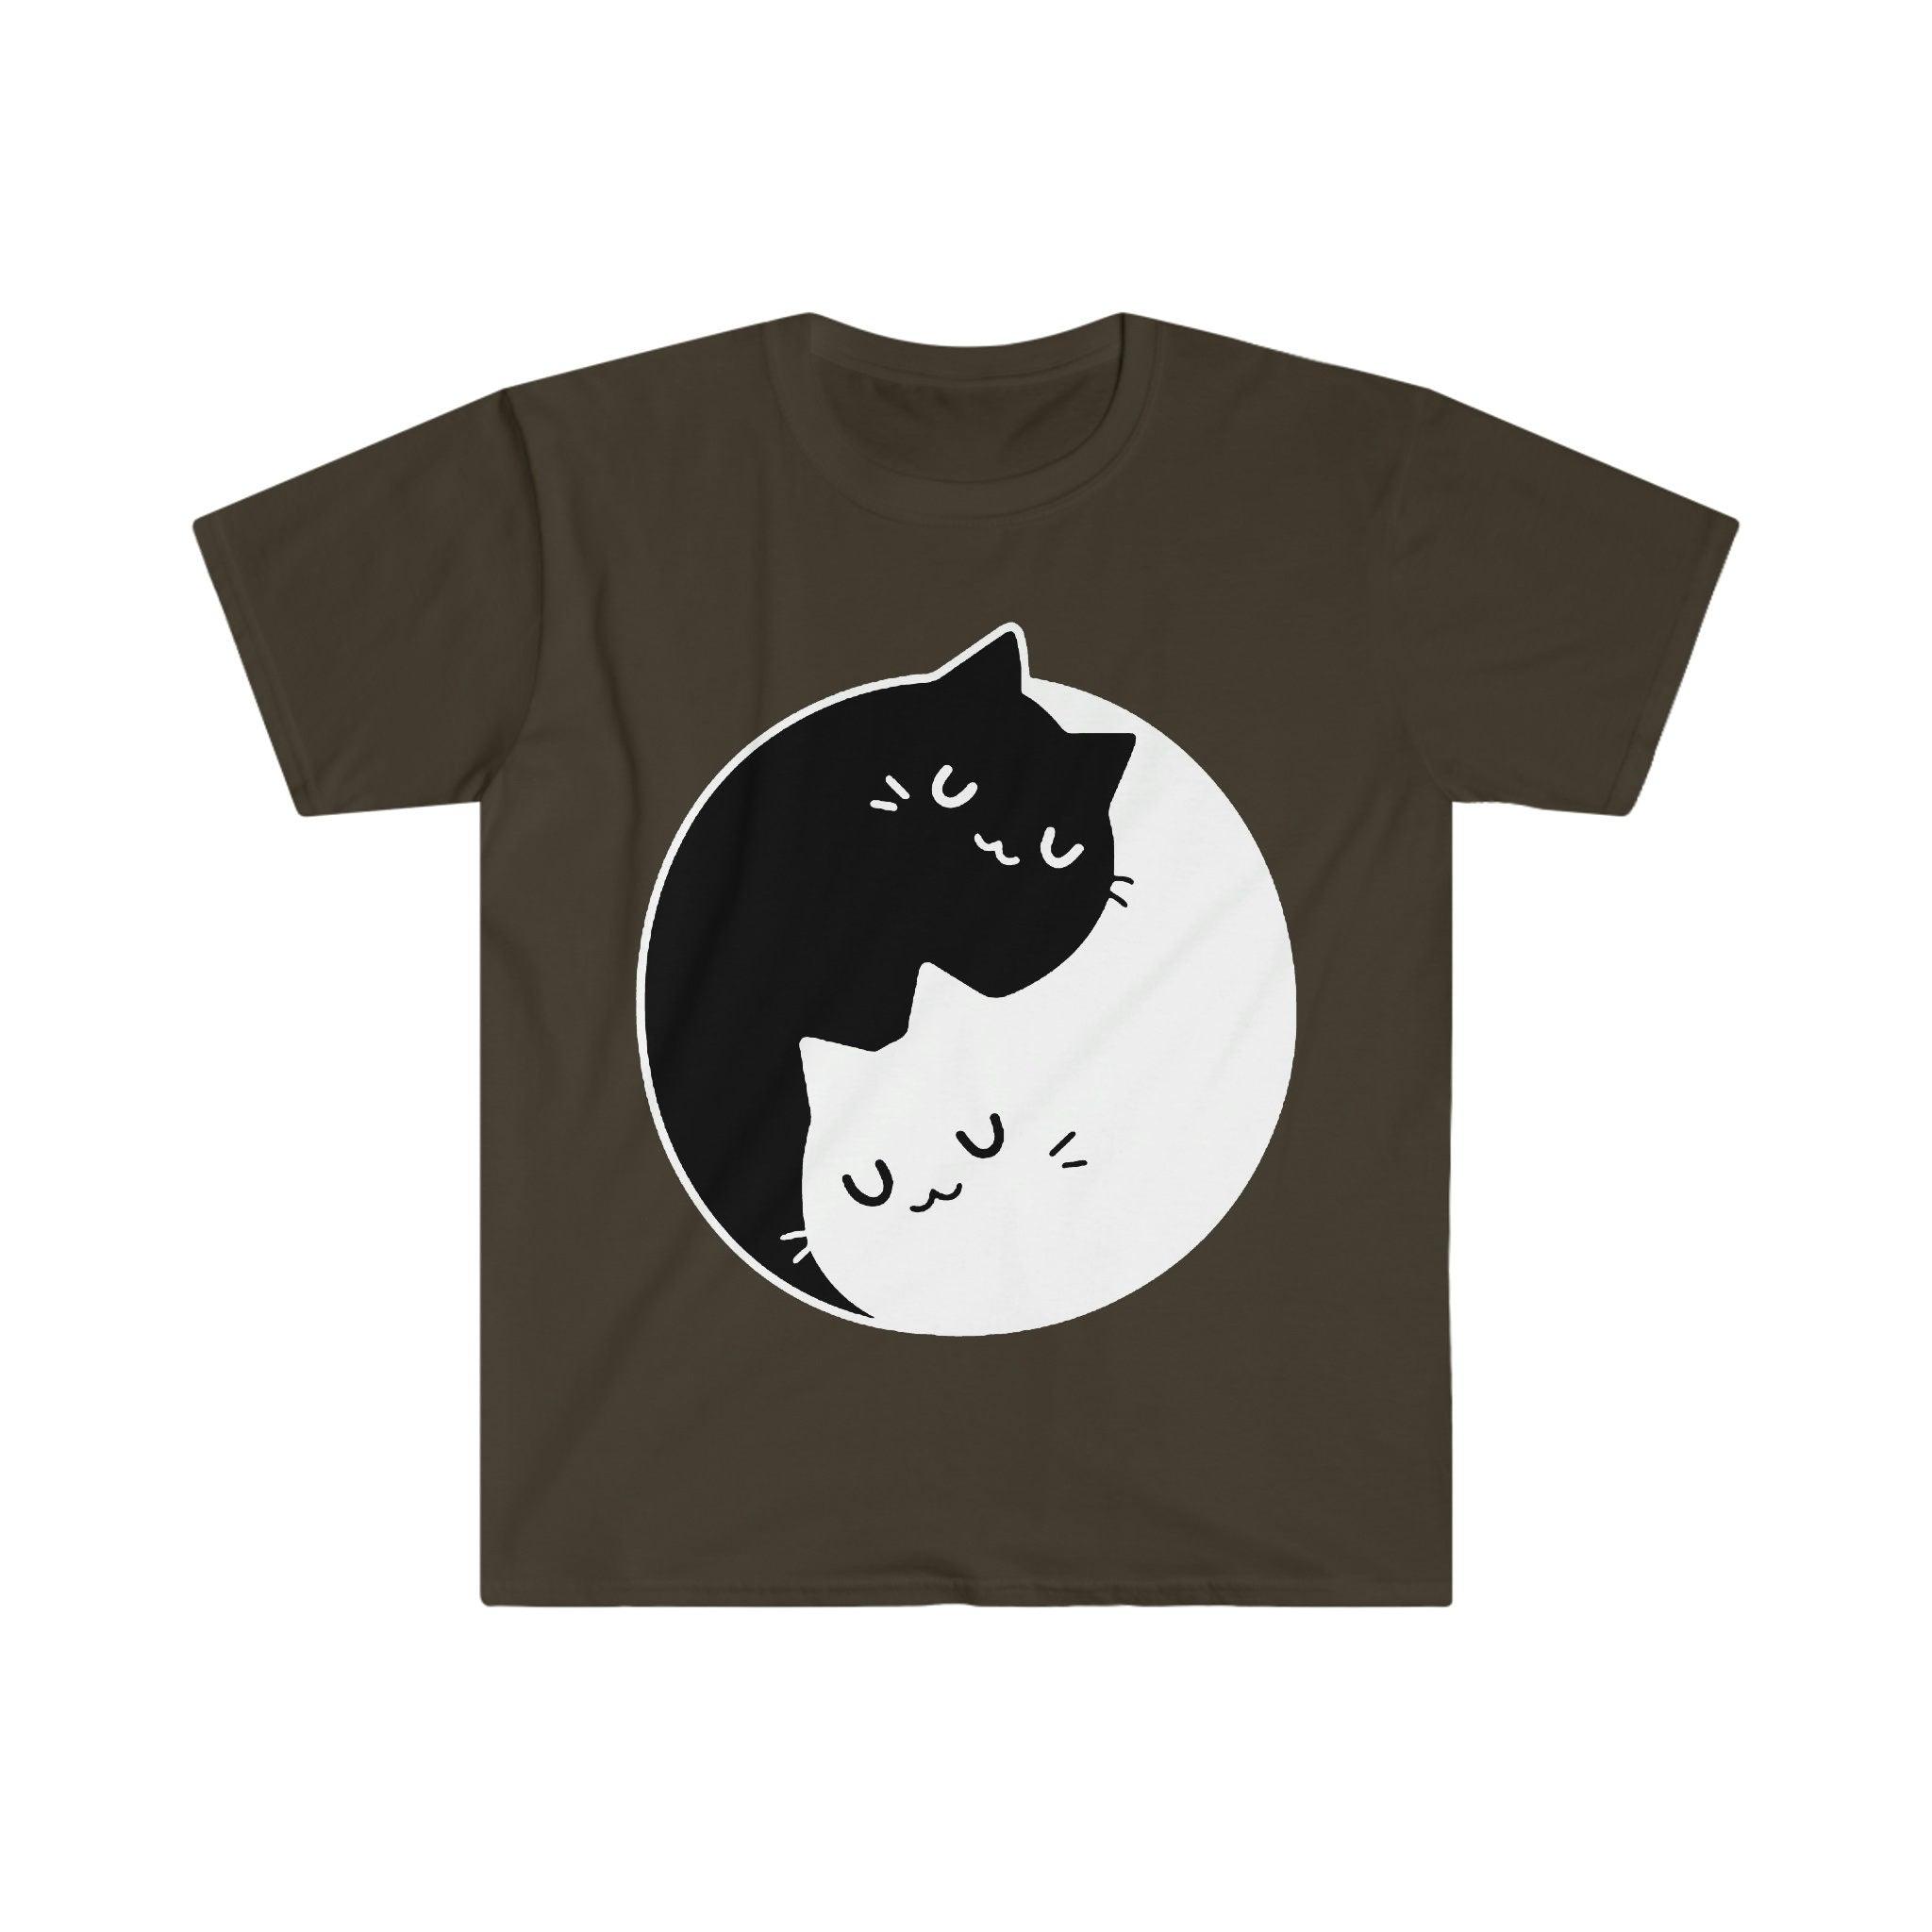 Magliette Gatti Yin Yang, Dualità Yin Yang || Gatti Yin Yang || Regalo perfetto - SML XL - Donna, Uomo unisex || Idee regalo per coppie Bff, maglietta mamma gatto, magliette - plusminusco.com